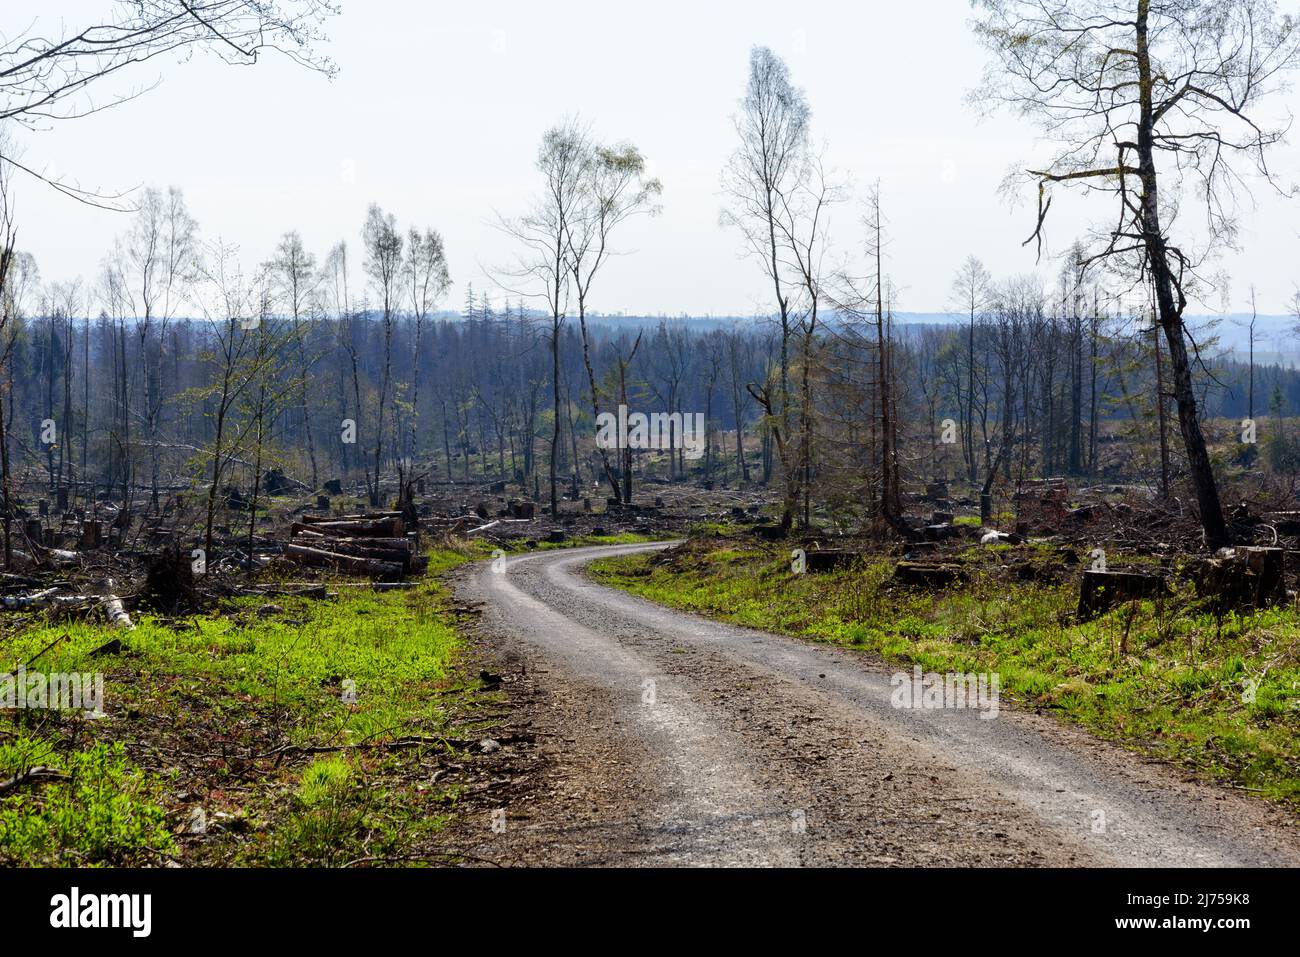 Deforestazione causata dall'infestazione di scarabeo in abeti già indebolita dal cambiamento climatico nella regione collinare di Harz nella Germania centrale Foto Stock